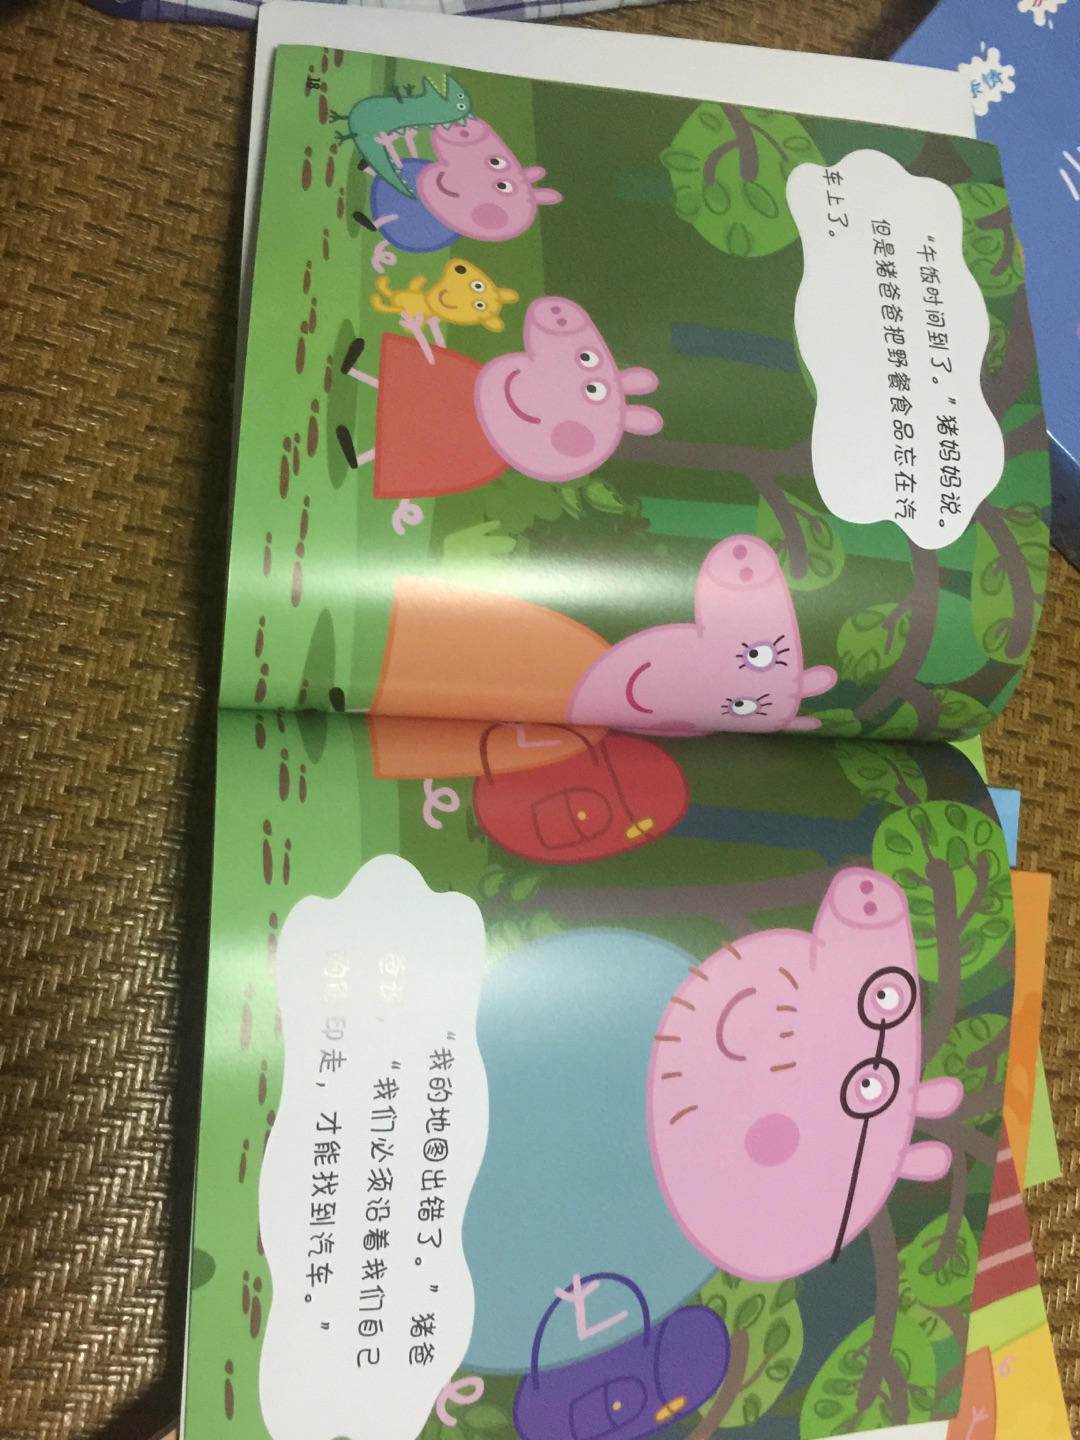 还可以，书的质量不错！小孩子很喜欢听故事！喜欢小猪佩奇！